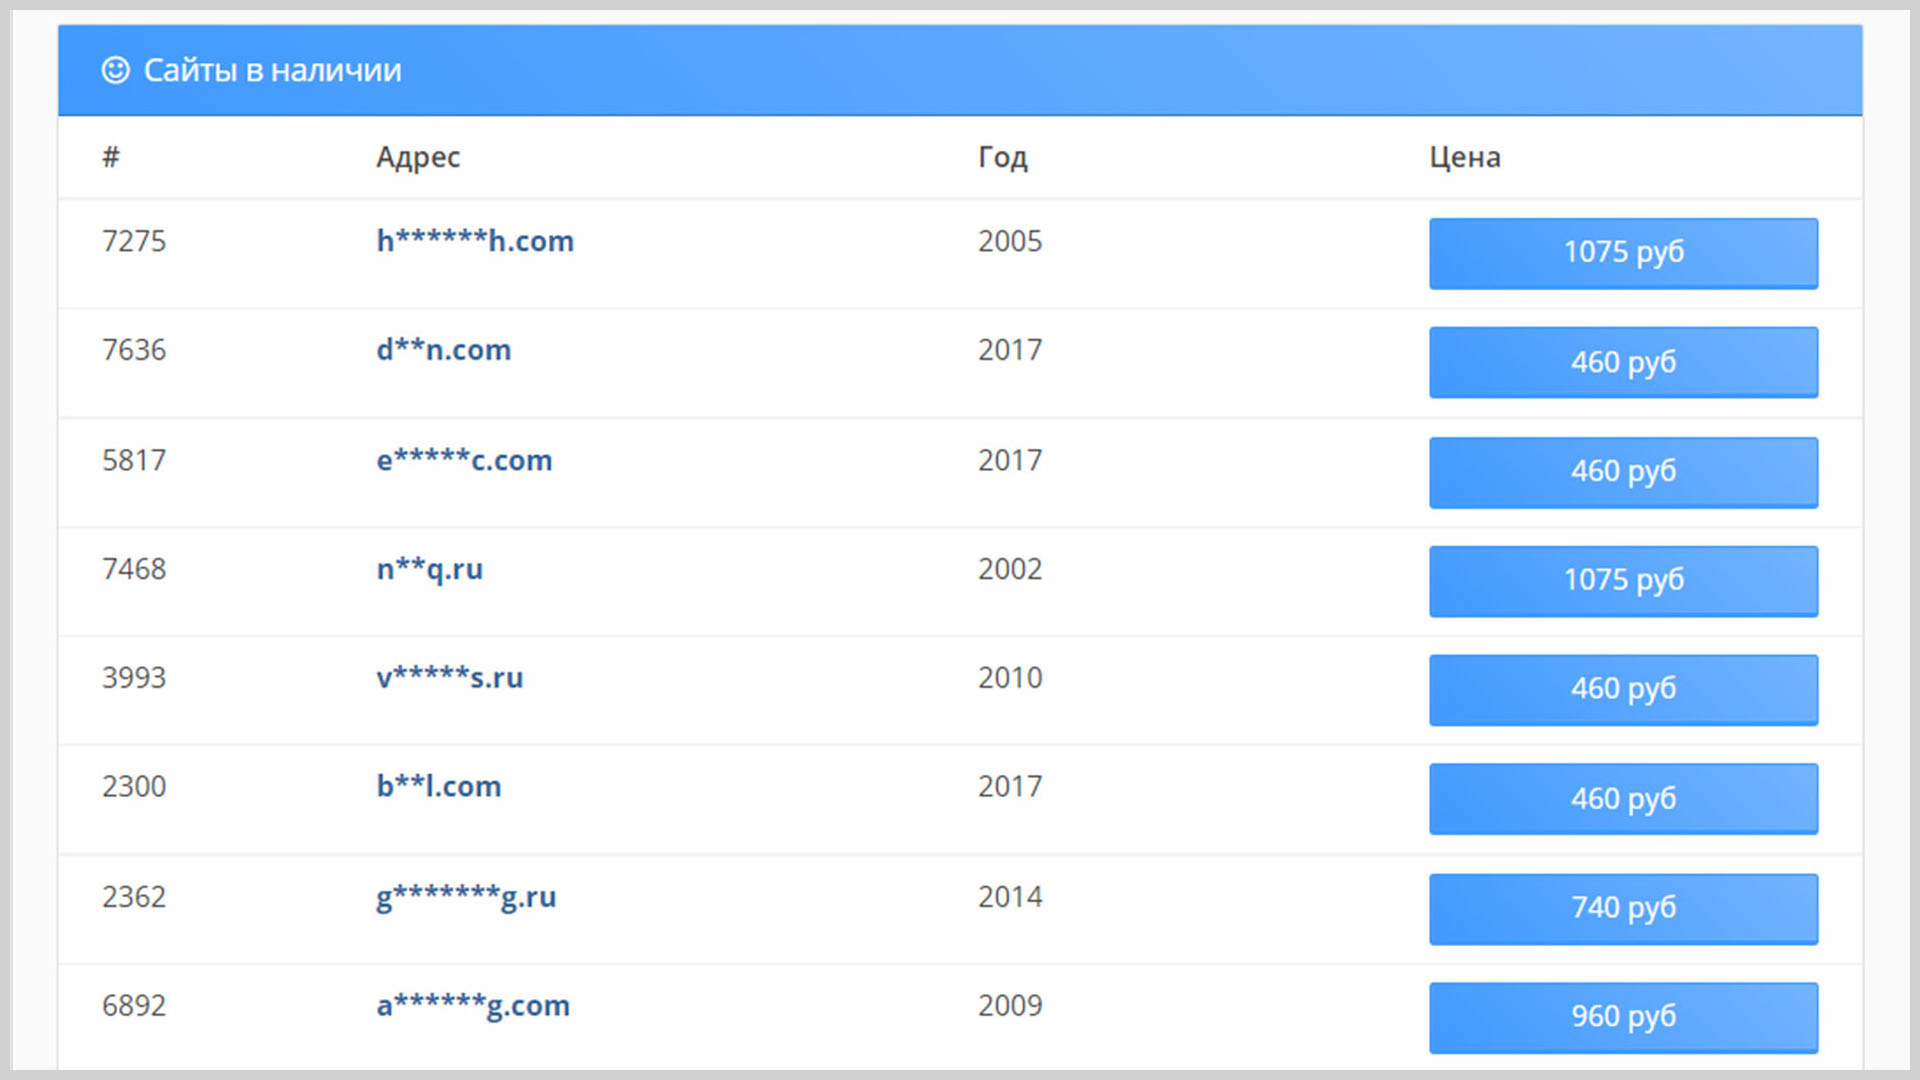 Скриншот со списком сайтов (доменных имён) доступных для покупки.